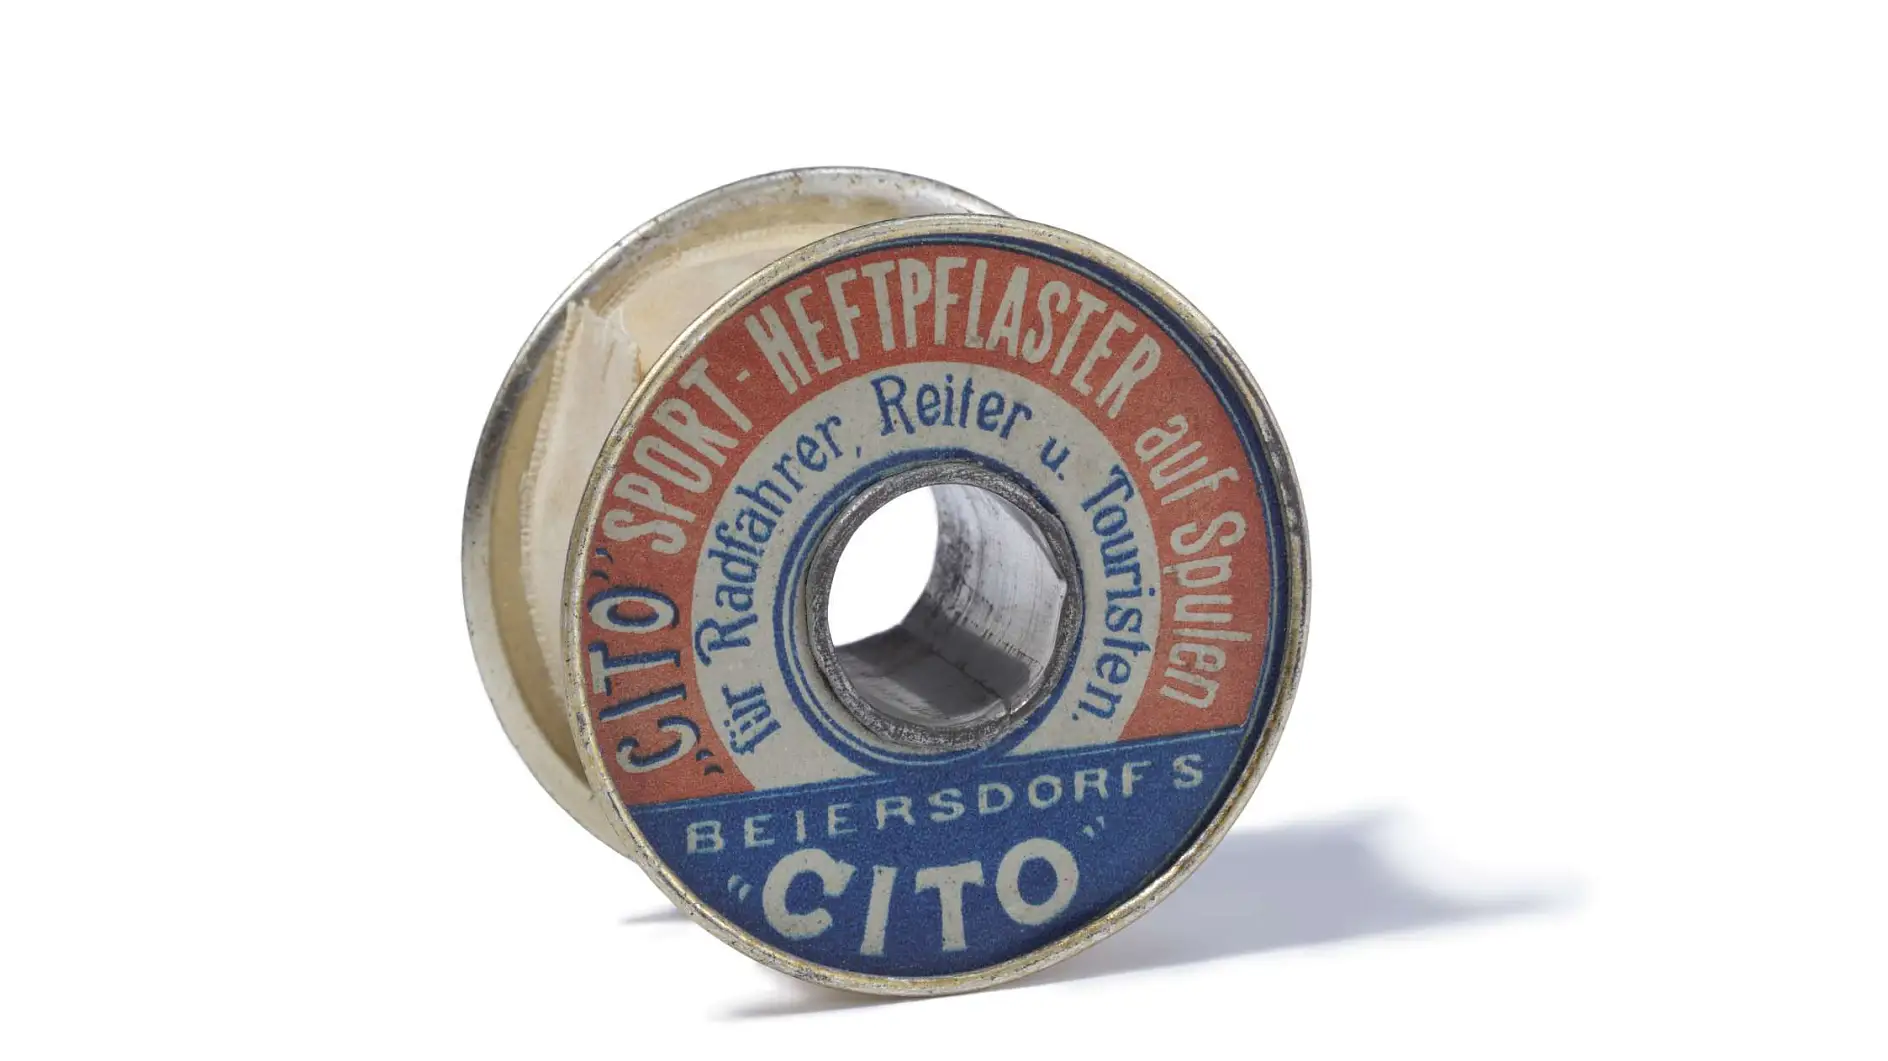 Plaster sportowy Cito z 1896 roku to pierwsza na świecie techniczna taśma klejąca.